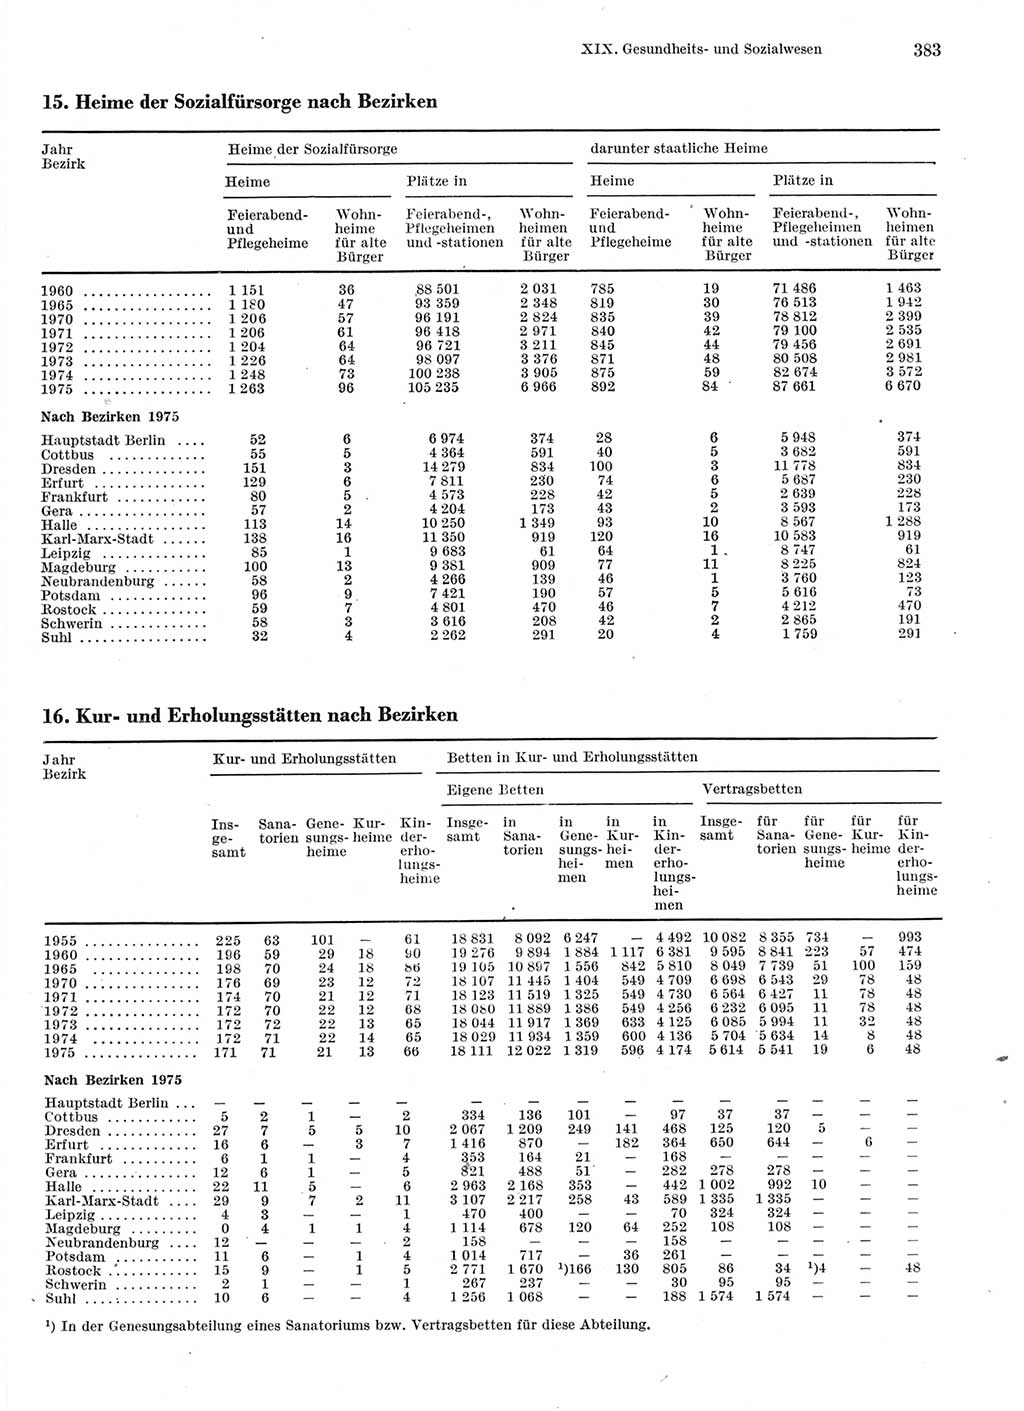 Statistisches Jahrbuch der Deutschen Demokratischen Republik (DDR) 1976, Seite 383 (Stat. Jb. DDR 1976, S. 383)